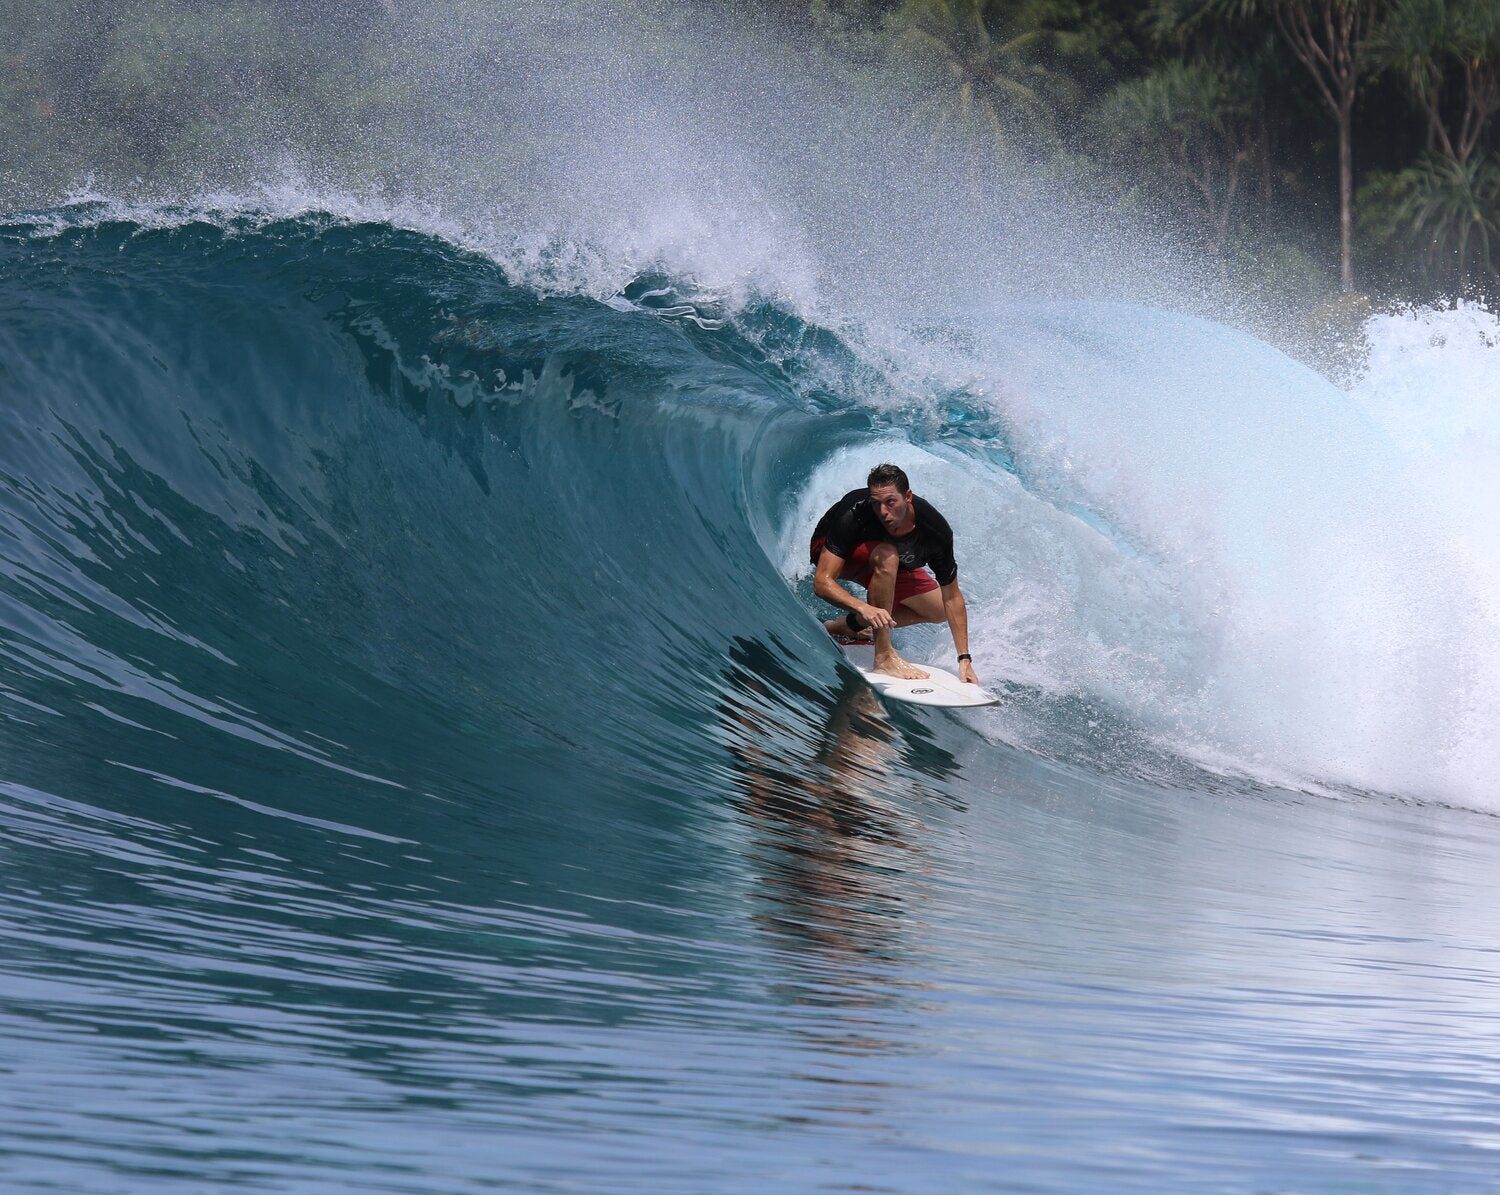 JP Roberts surfing in the ocean